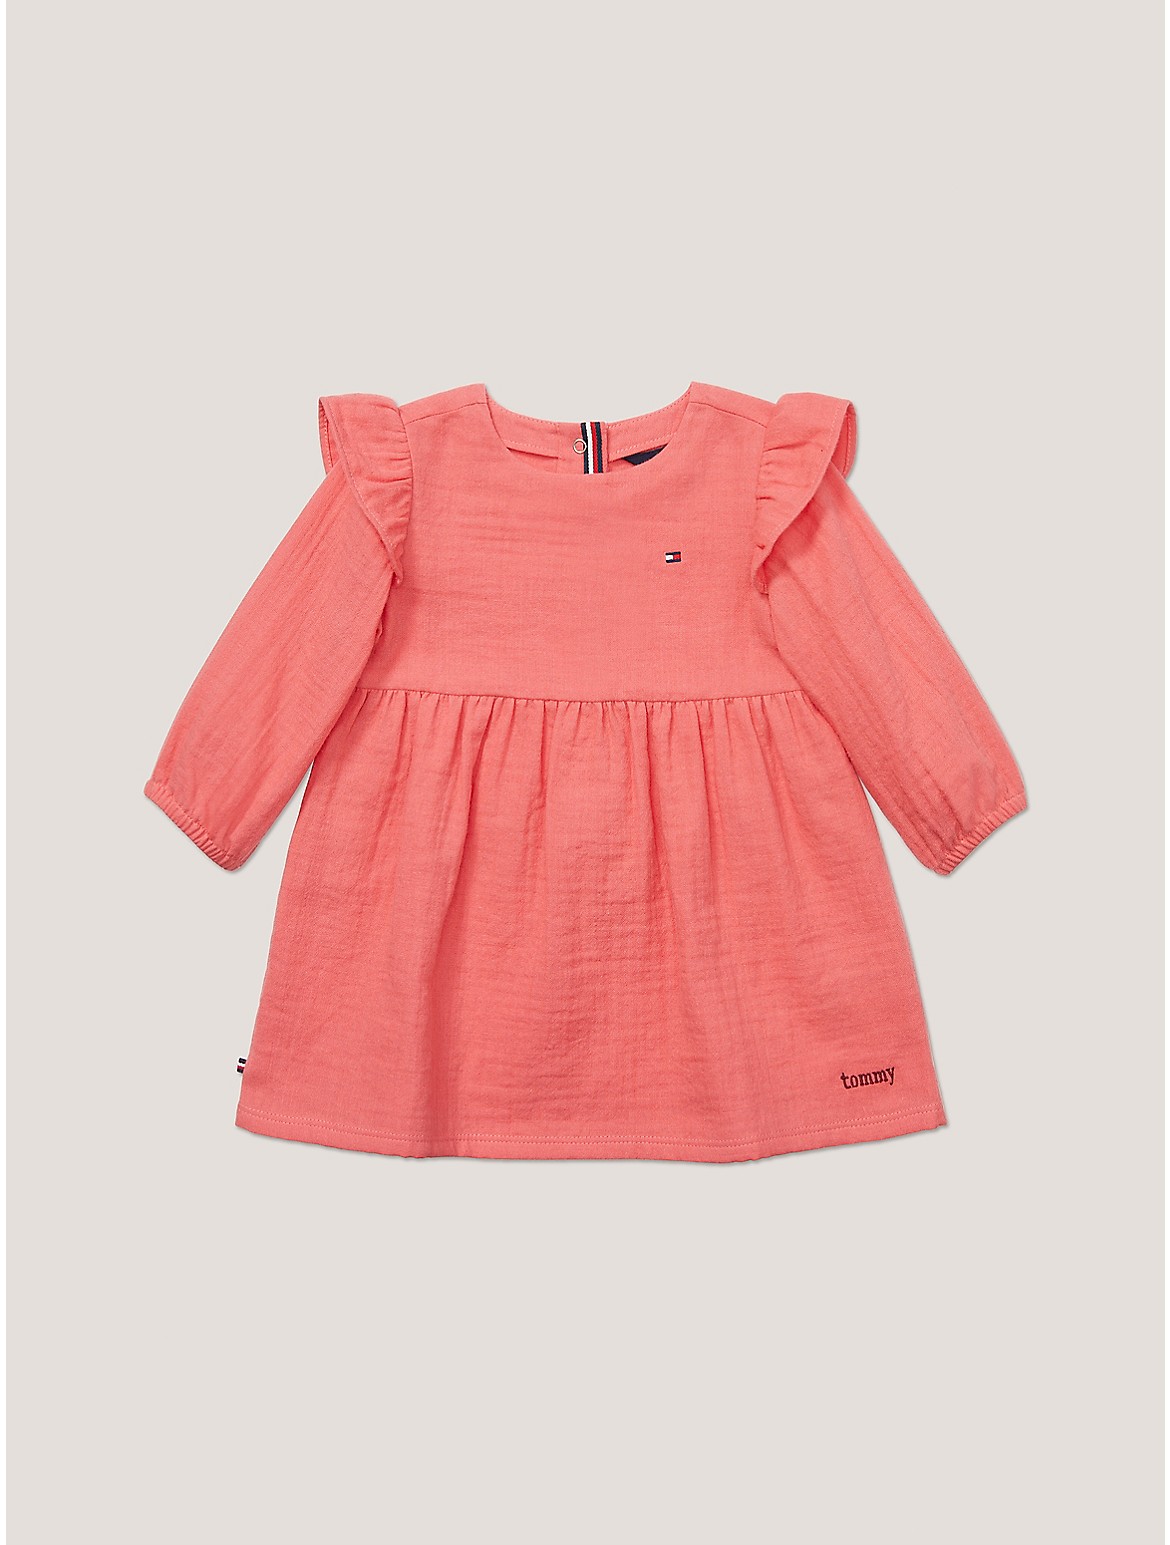 Tommy Hilfiger Girls' Babies' Muslin Frill Dress - Pink - 24M